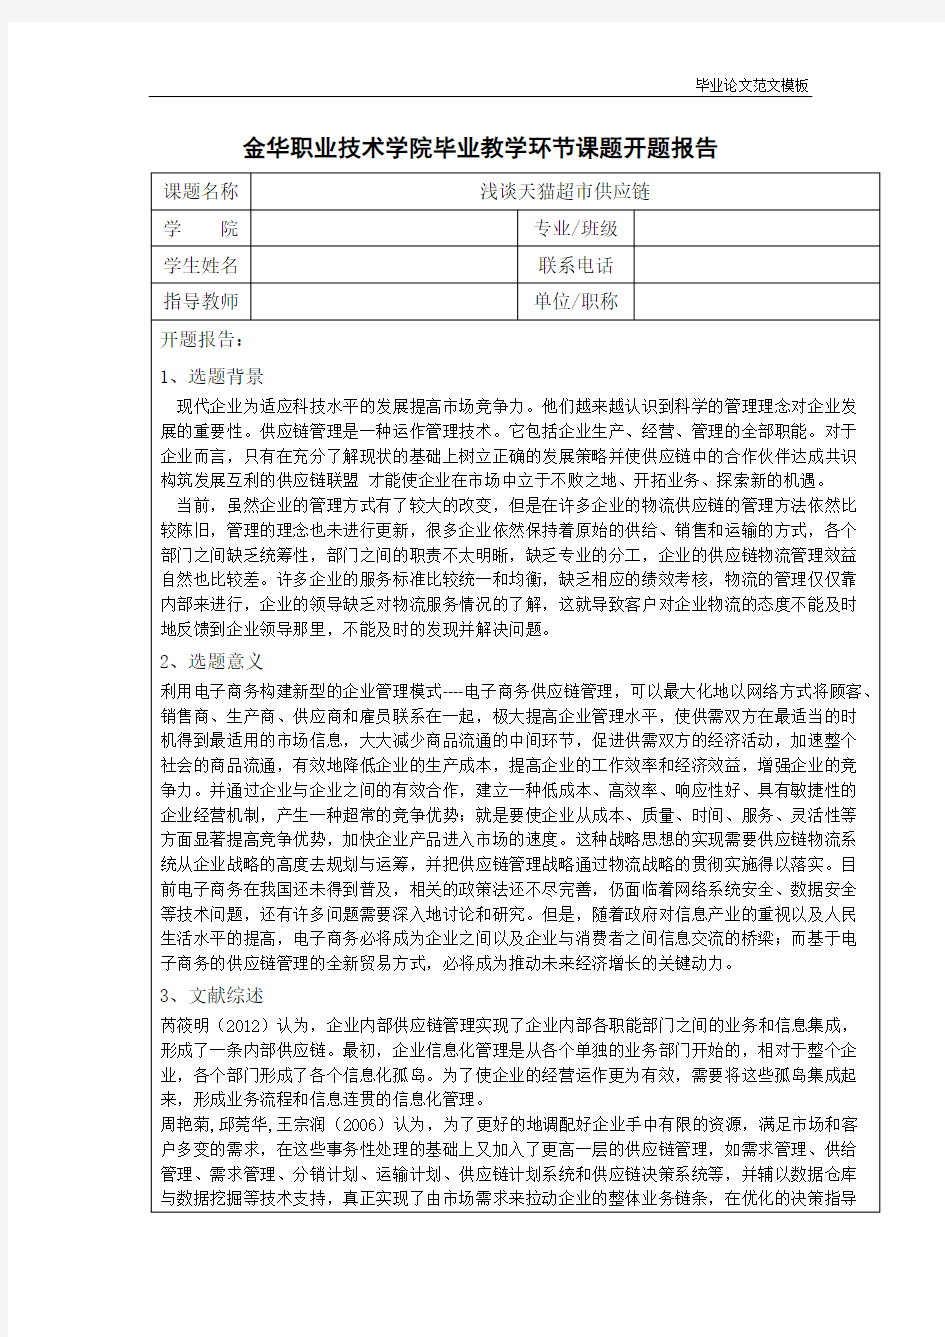 浅谈天猫超市供应链(开题报告).pdf